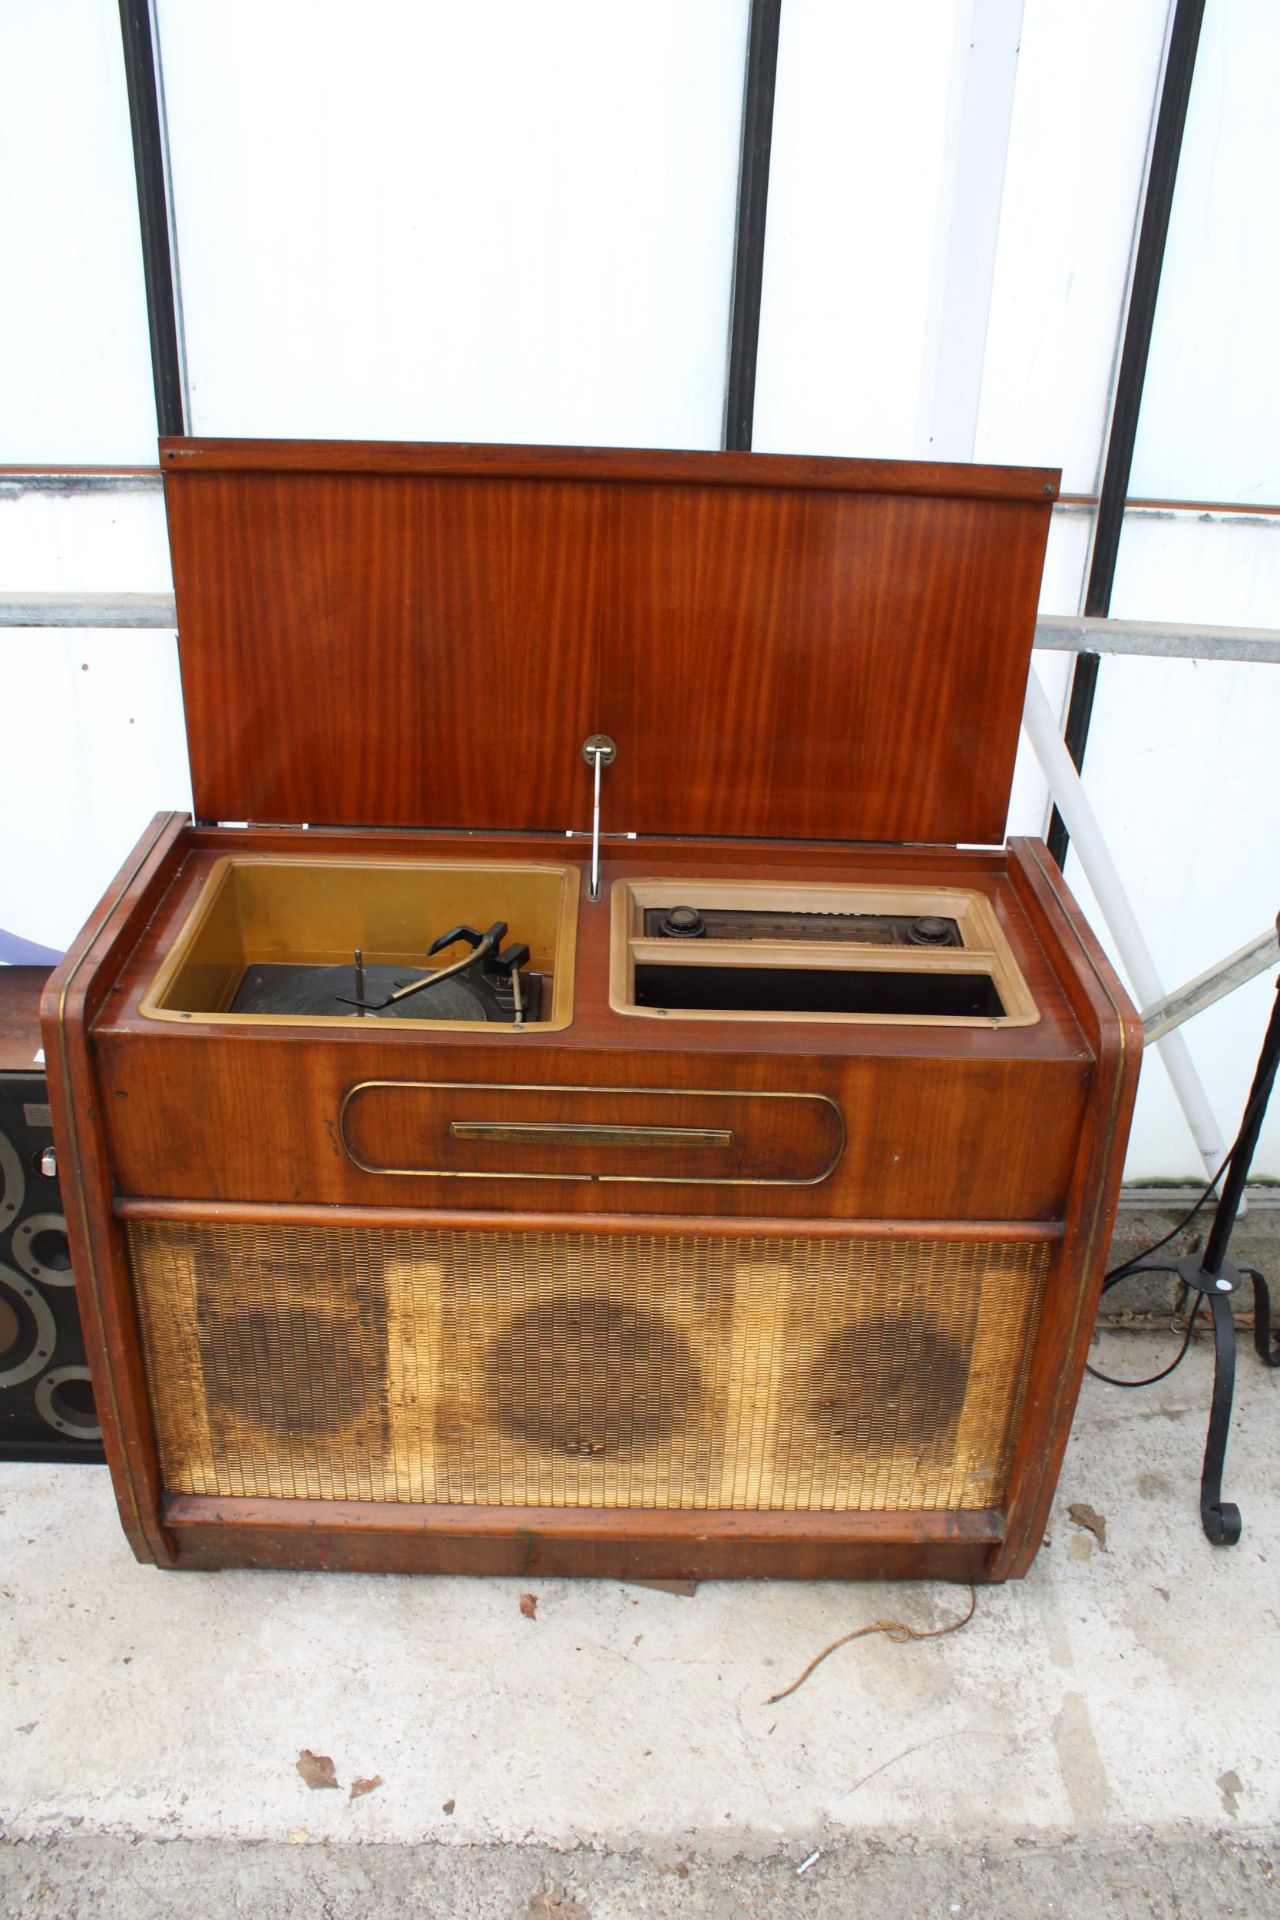 A VINTAGE MID CENTURY REGENTONE RADIOGRAM WITH A GARRARD DECK - Image 5 of 6